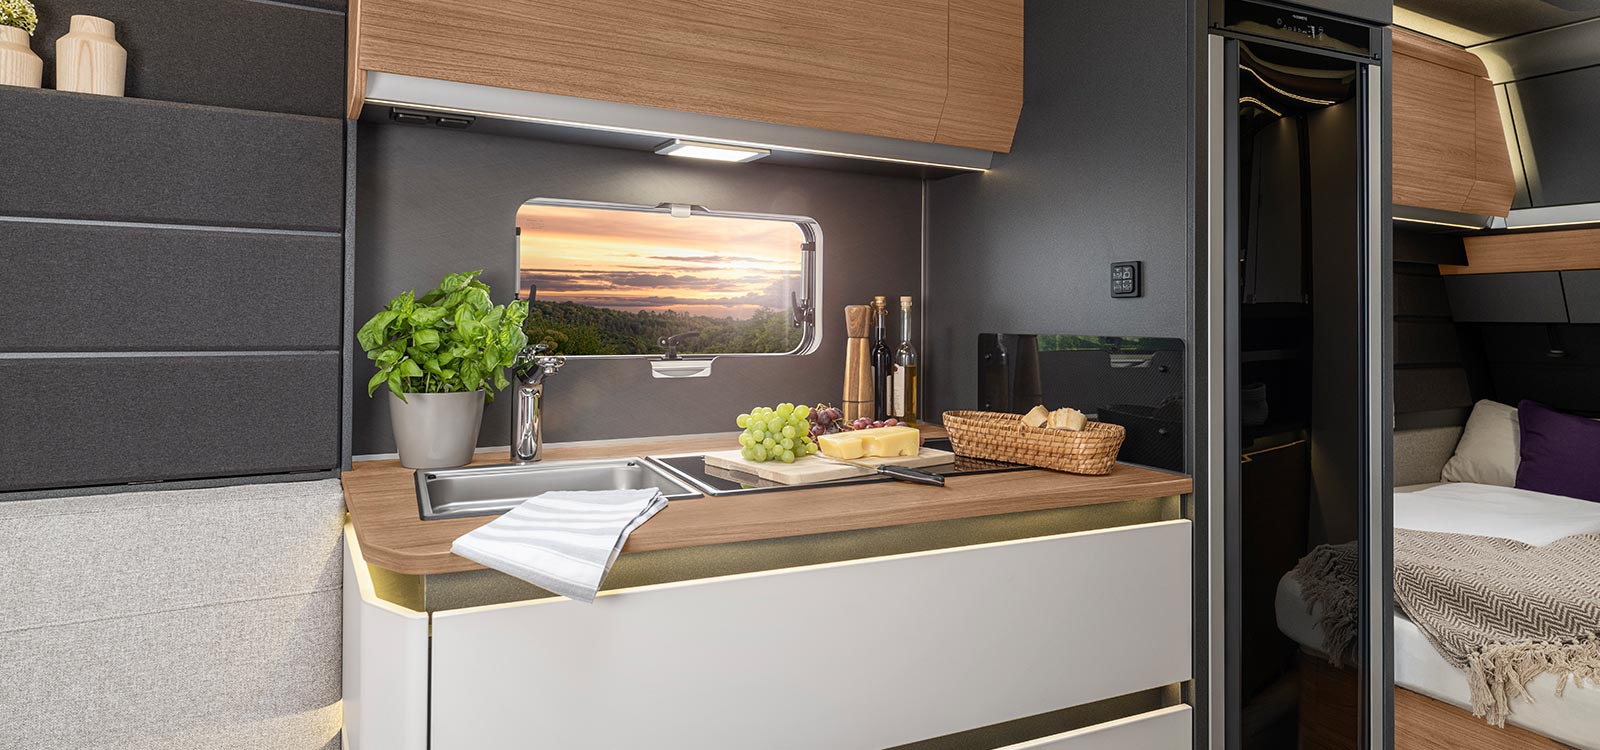 KNAUS AZUR mit einer minimalistischen Design‐Küche, Ambientebeleuchtung, einer edlen Arbeitsplatte und einem formschönem Kühlschrank